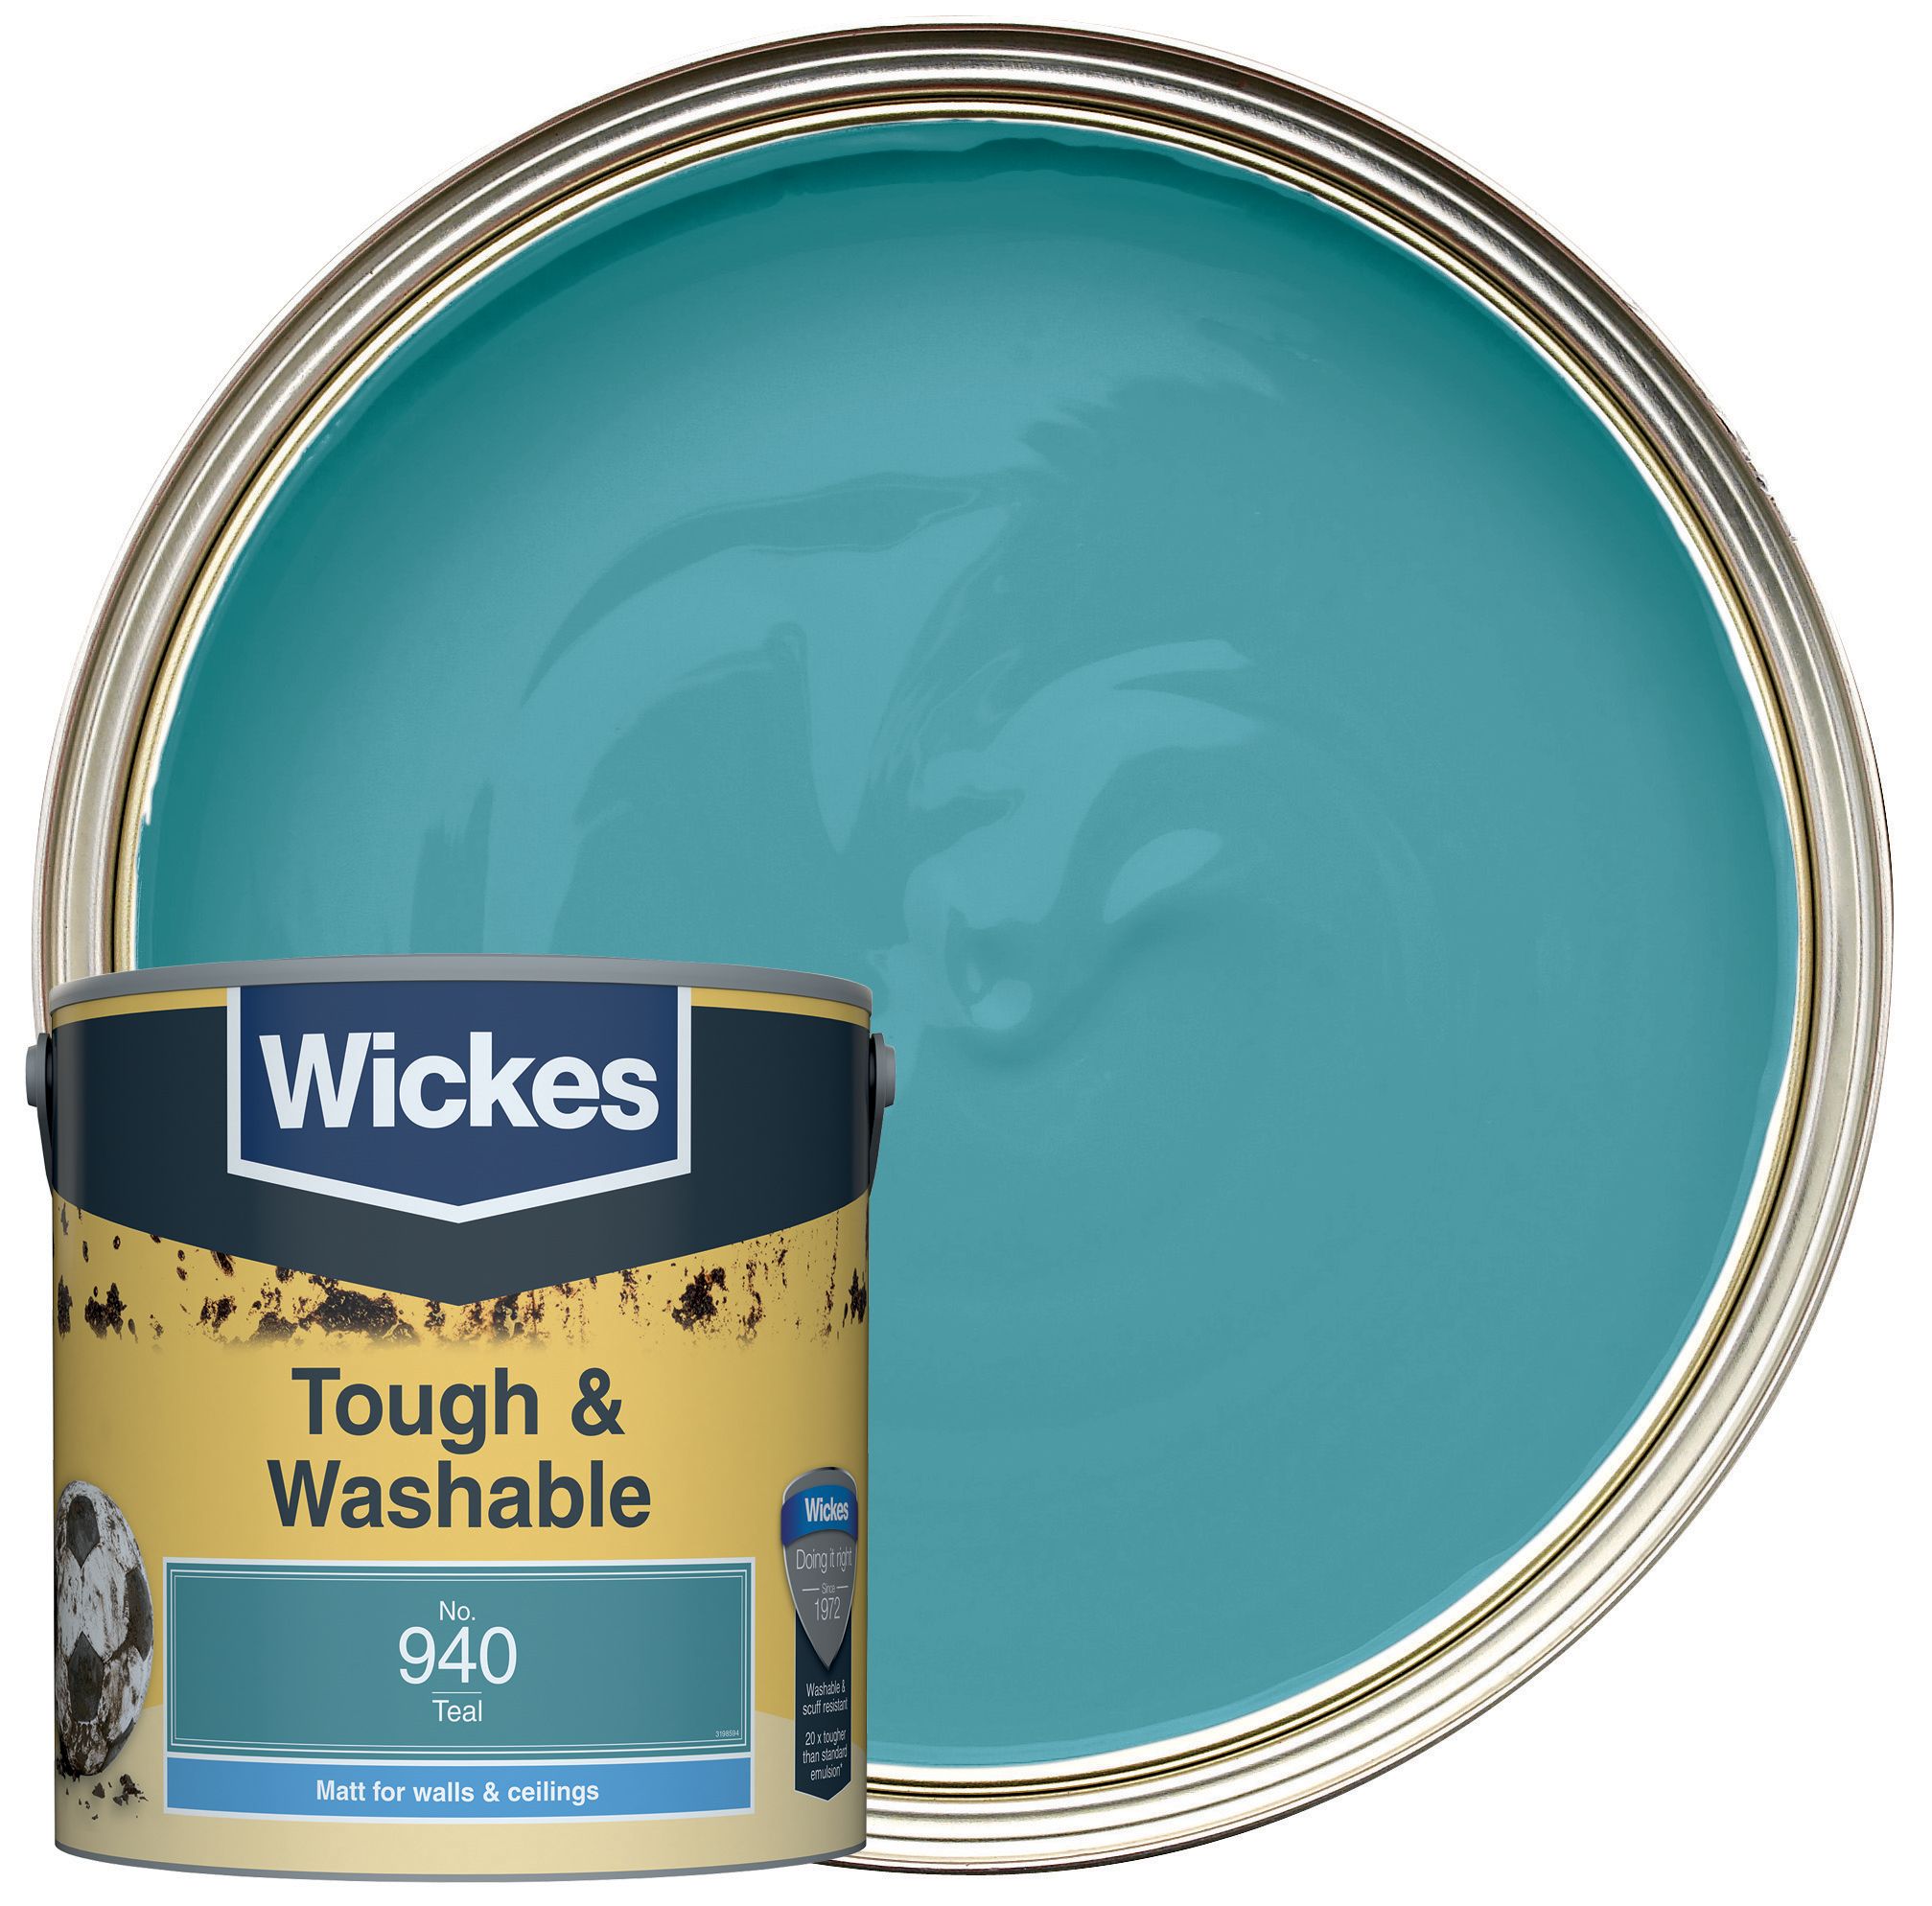 Wickes Tough & Washable Matt Emulsion Paint - Teal No.940 - 2.5L